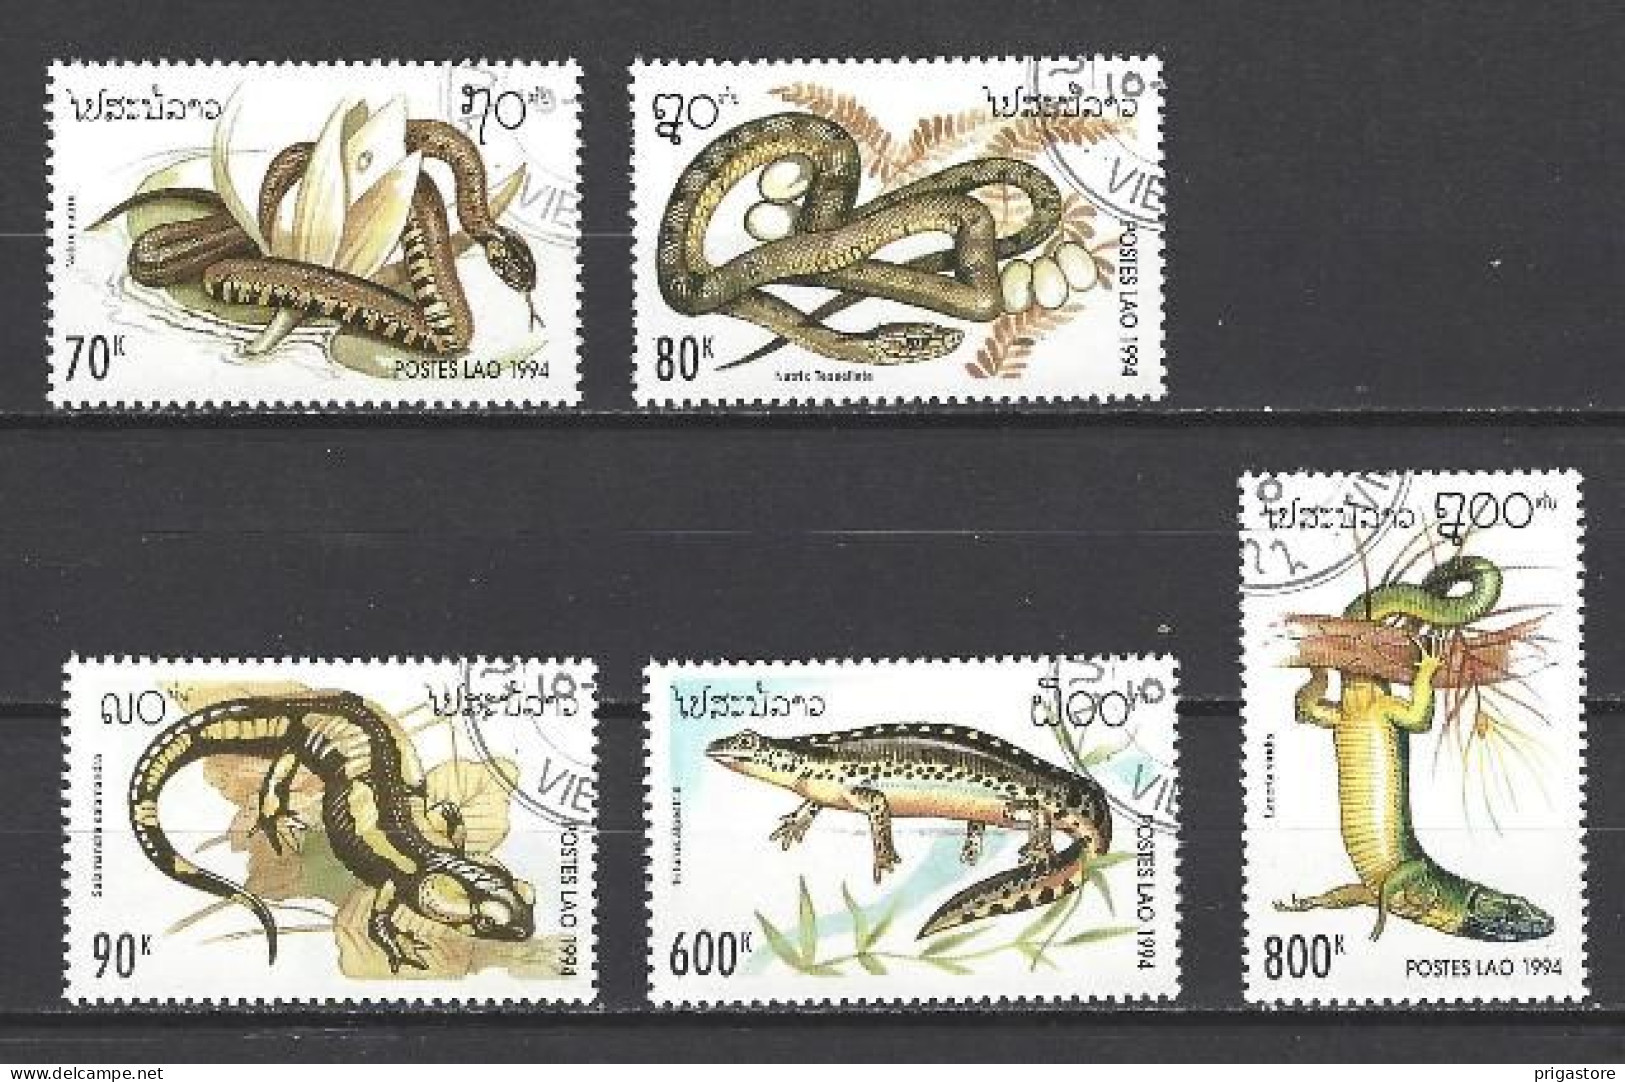 Animaux Reptiles Laos 1994 (124) Yvert N° 1134 à 1138 Oblitérés Used - Schlangen